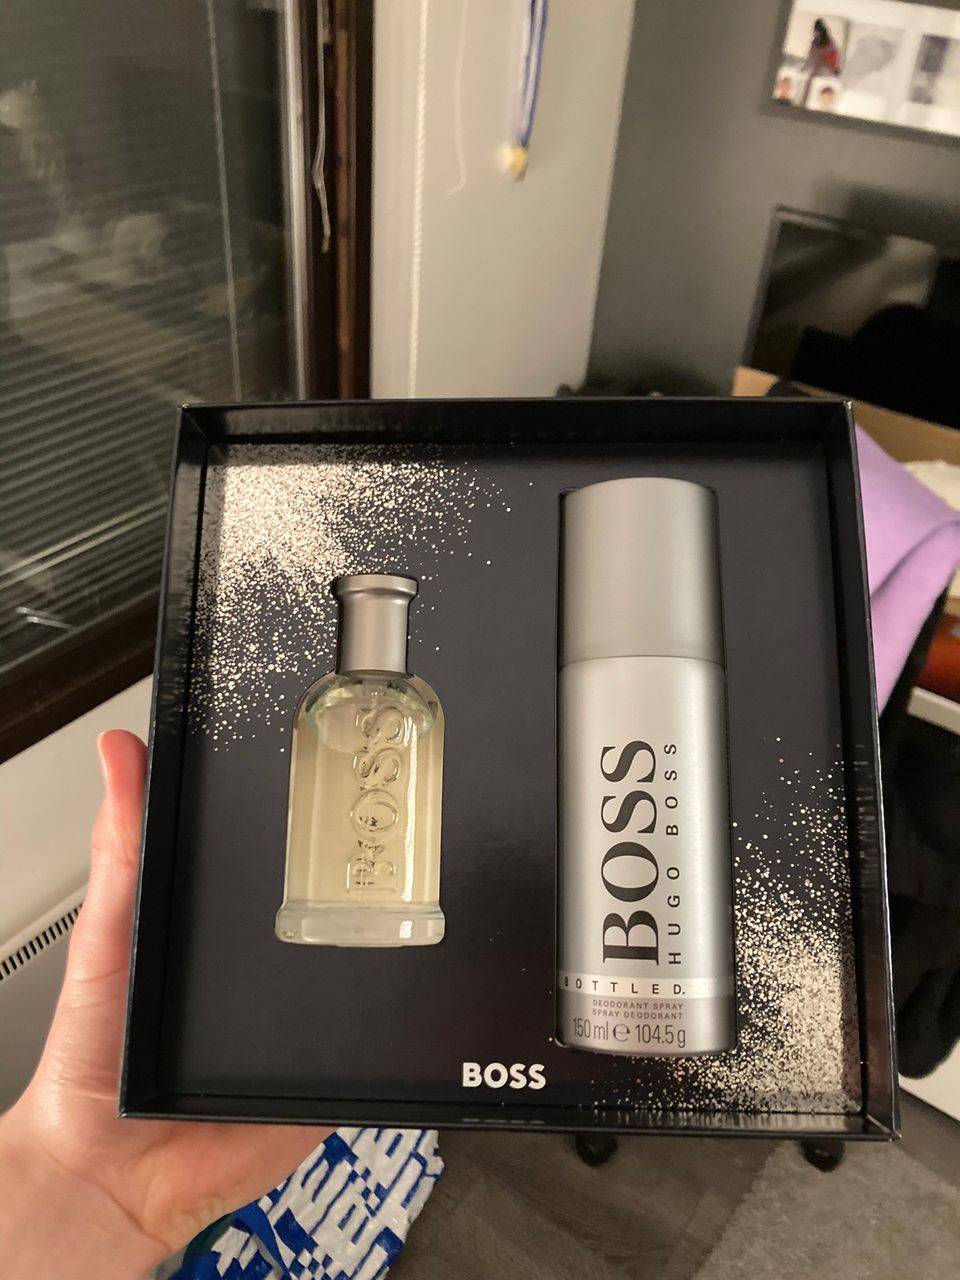 Hugo Boss hajuvesi pakkaus